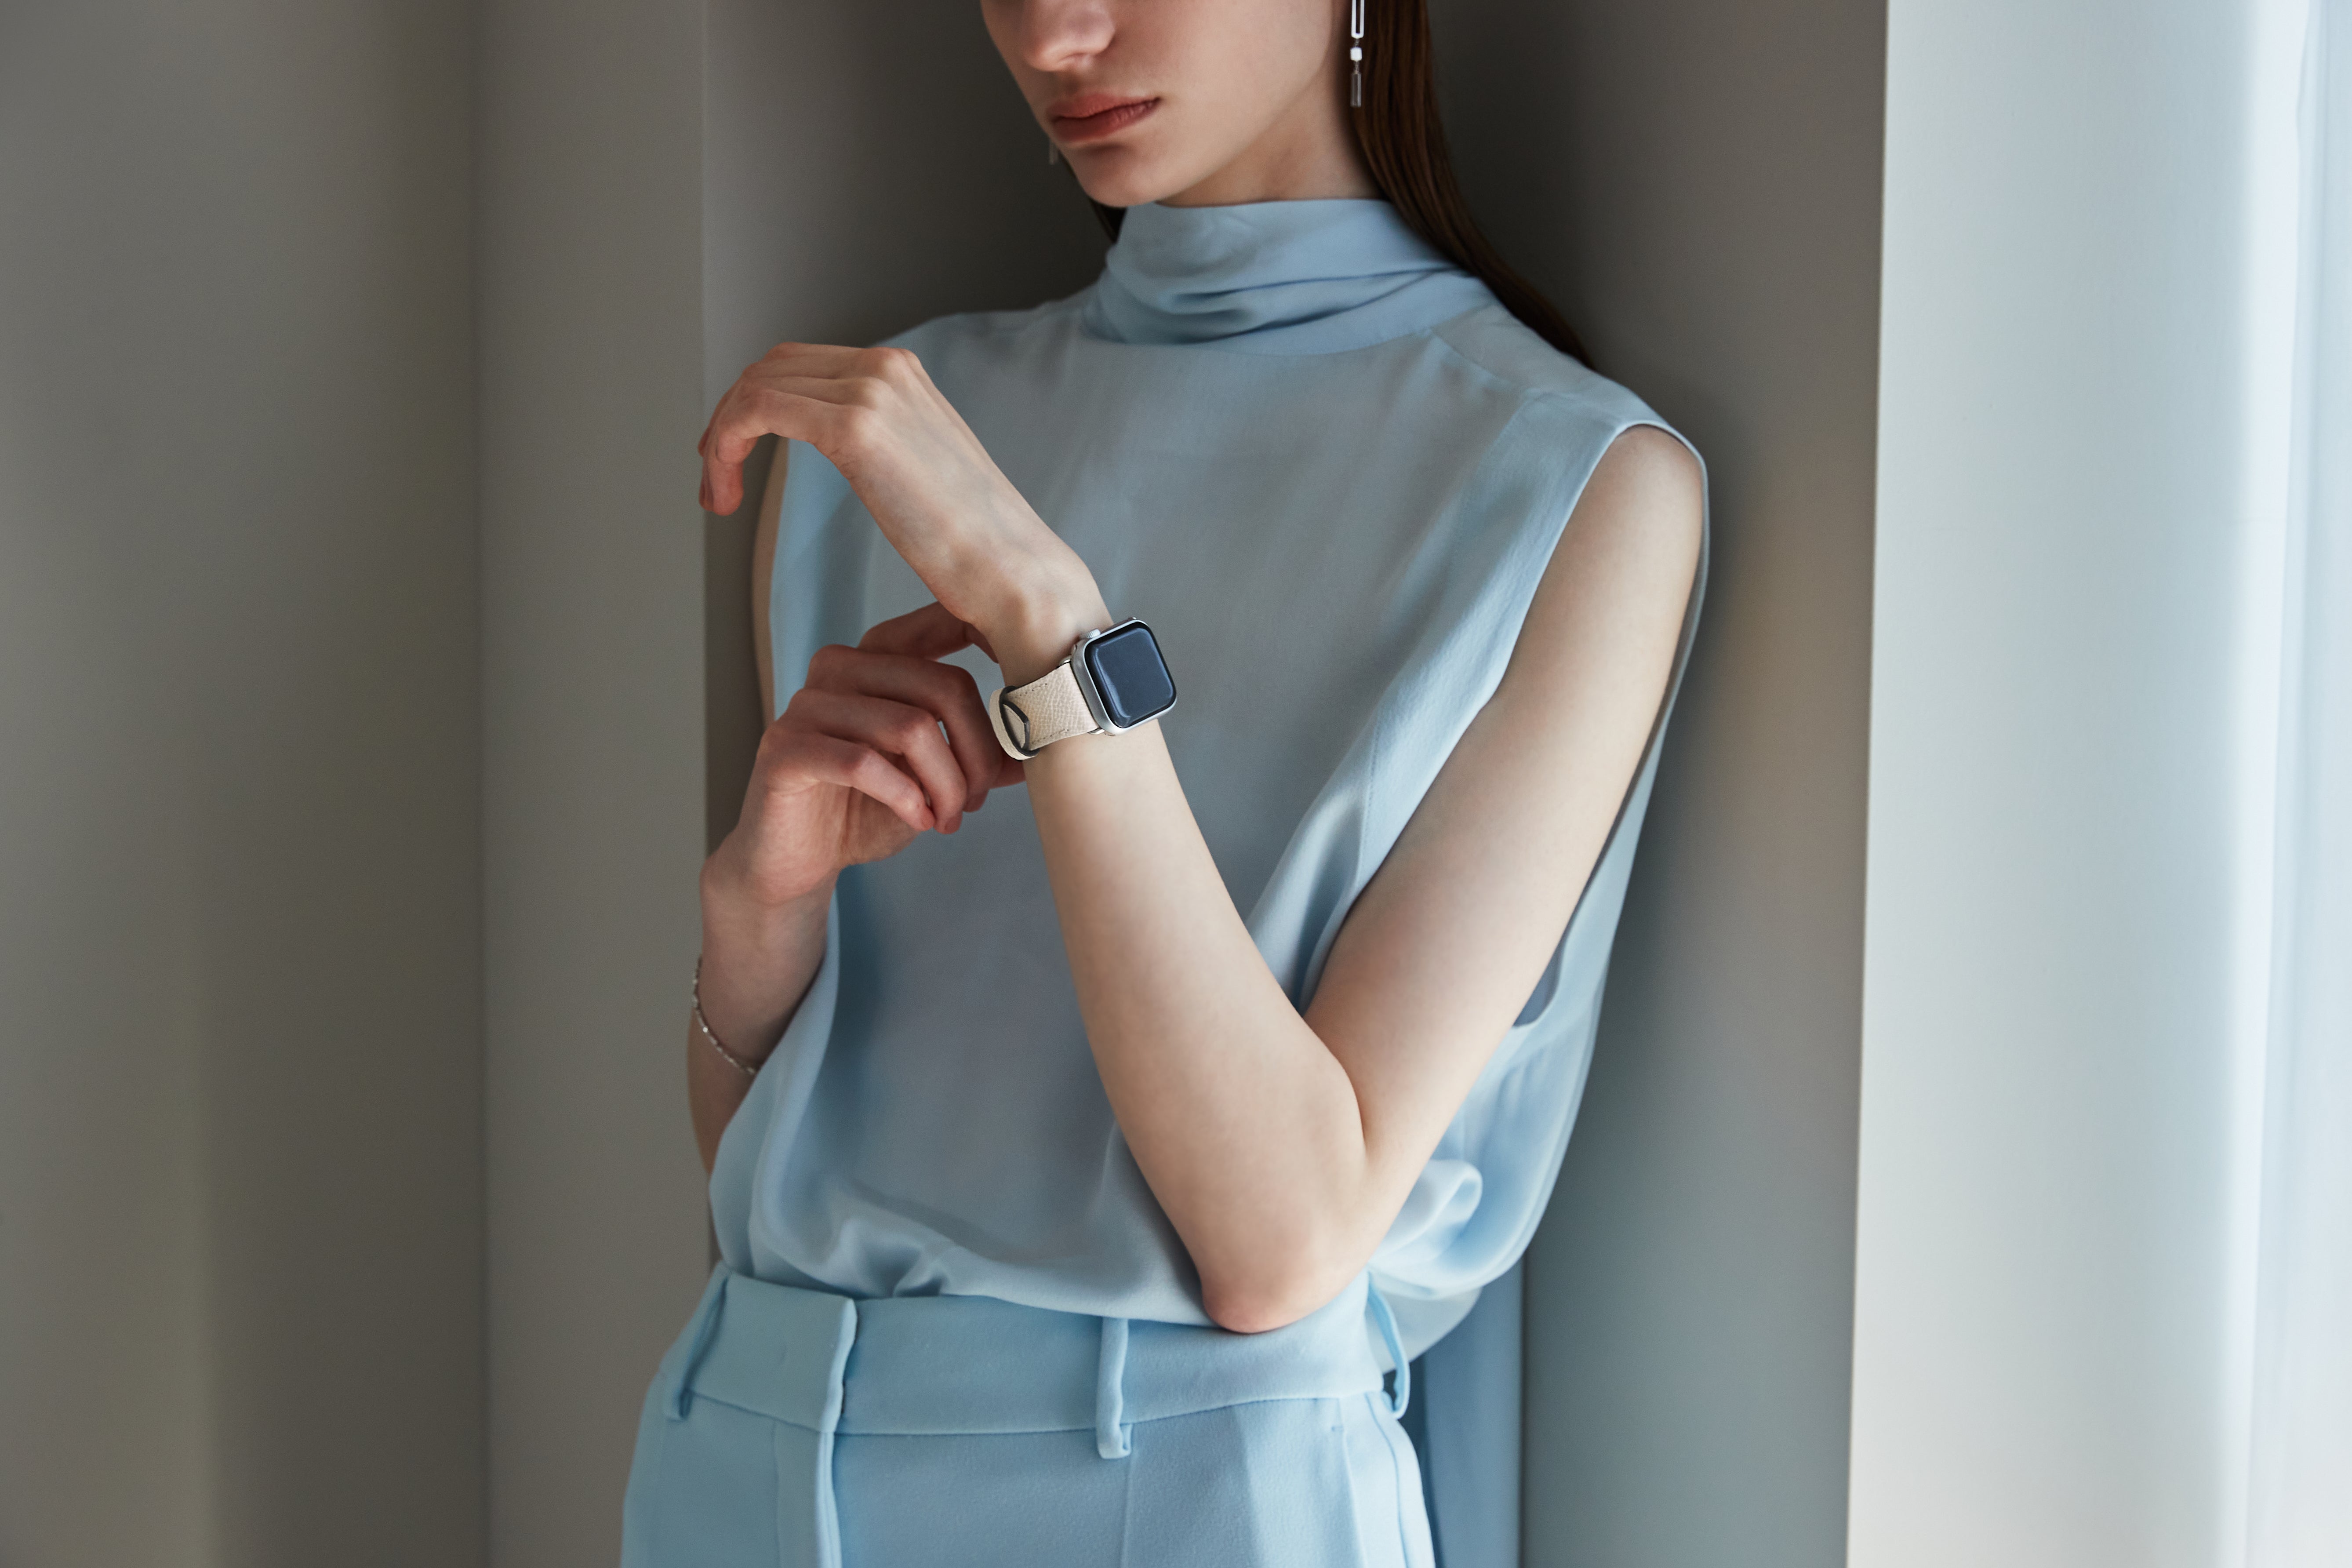 Zegarek Apple Watch z eleganckim skórzanym paskiem.